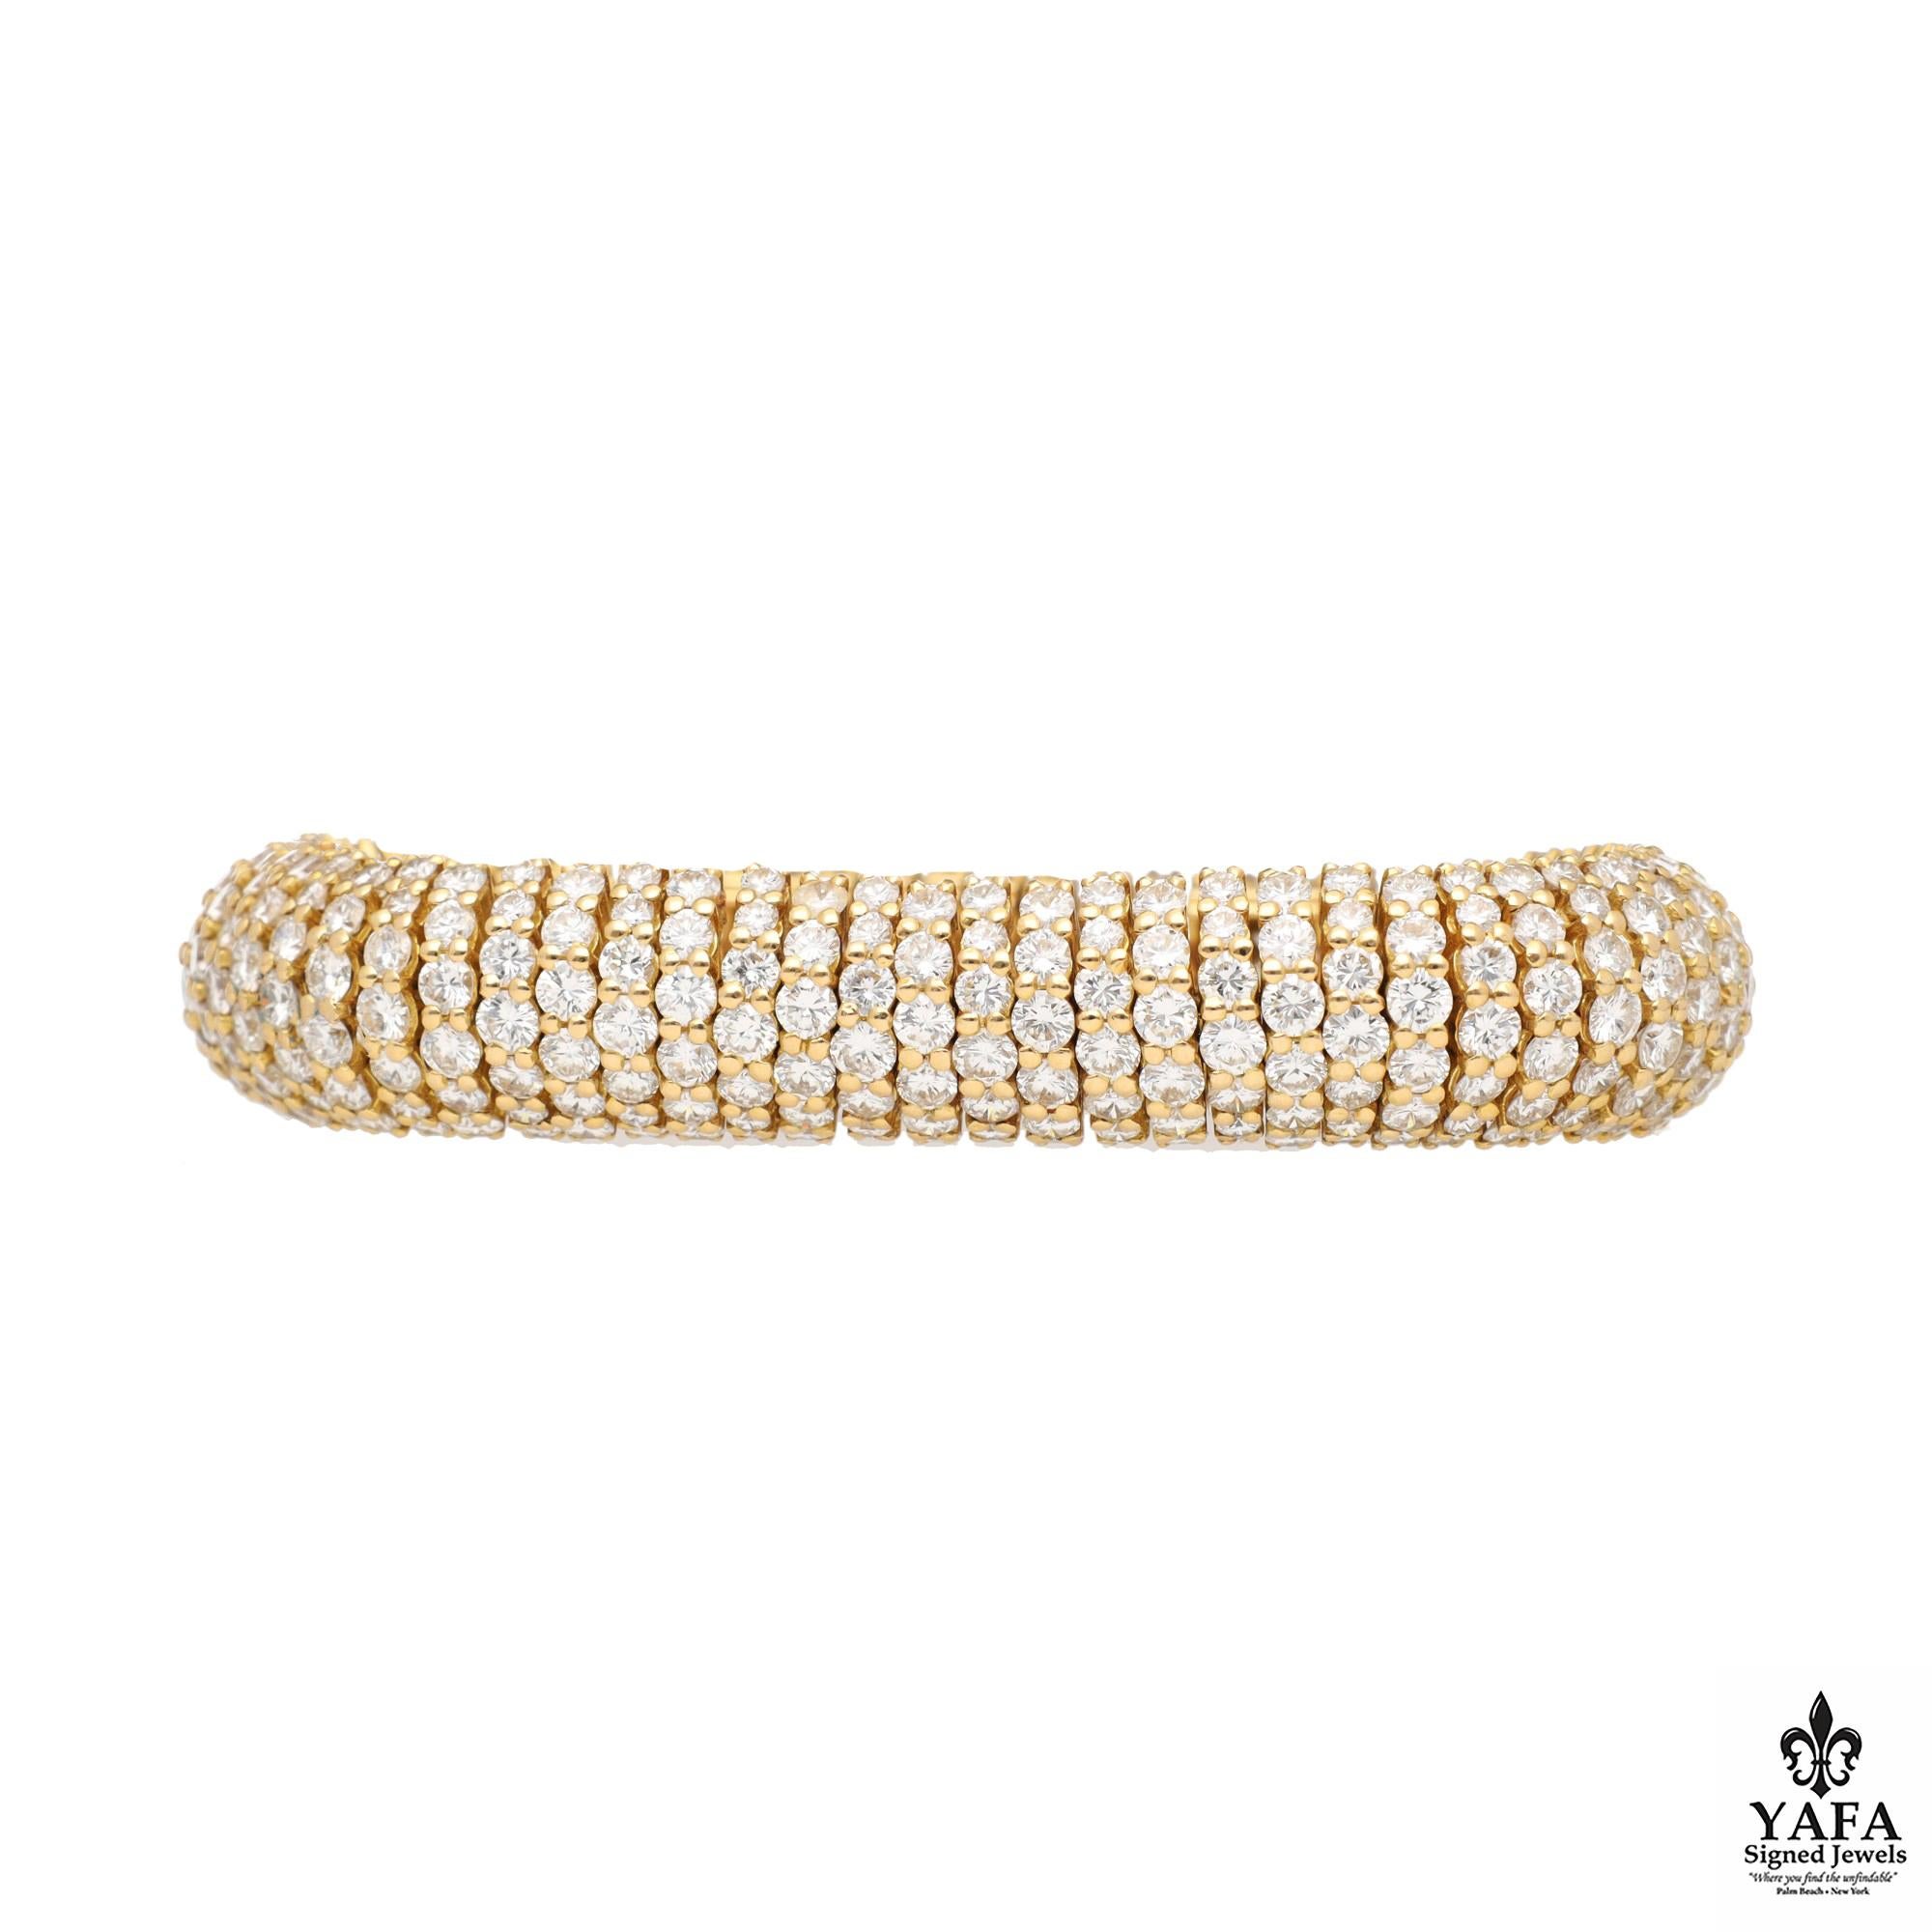 Bracelet souple en or jaune 18k et diamants de Boucheron. L'or chaud et lustré et les diamants brillants dégagent un attrait intemporel, tandis que les détails subtils témoignent de l'engagement inébranlable de Boucheron en faveur de l'excellence.